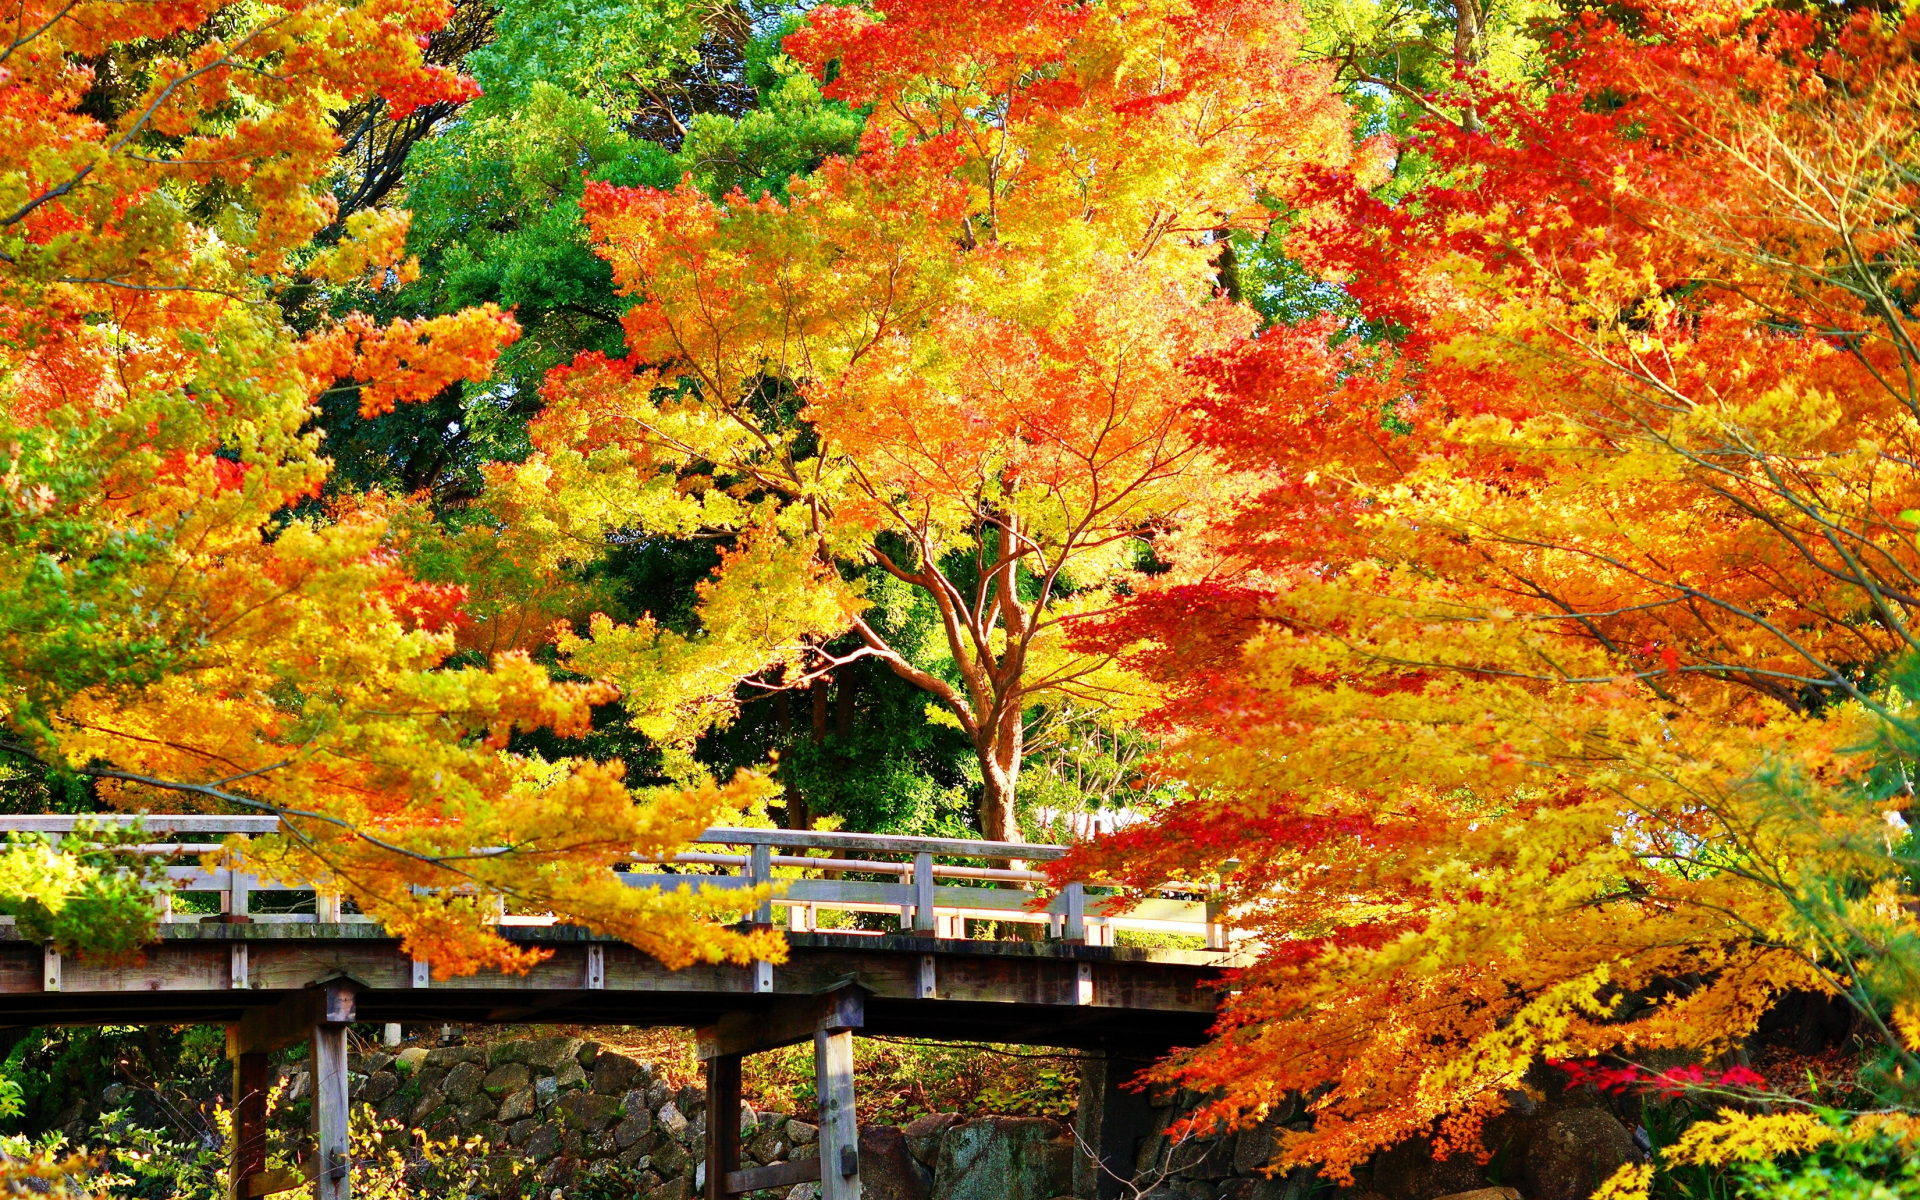 осень, парк, мост, деревья, листья, камни, красота